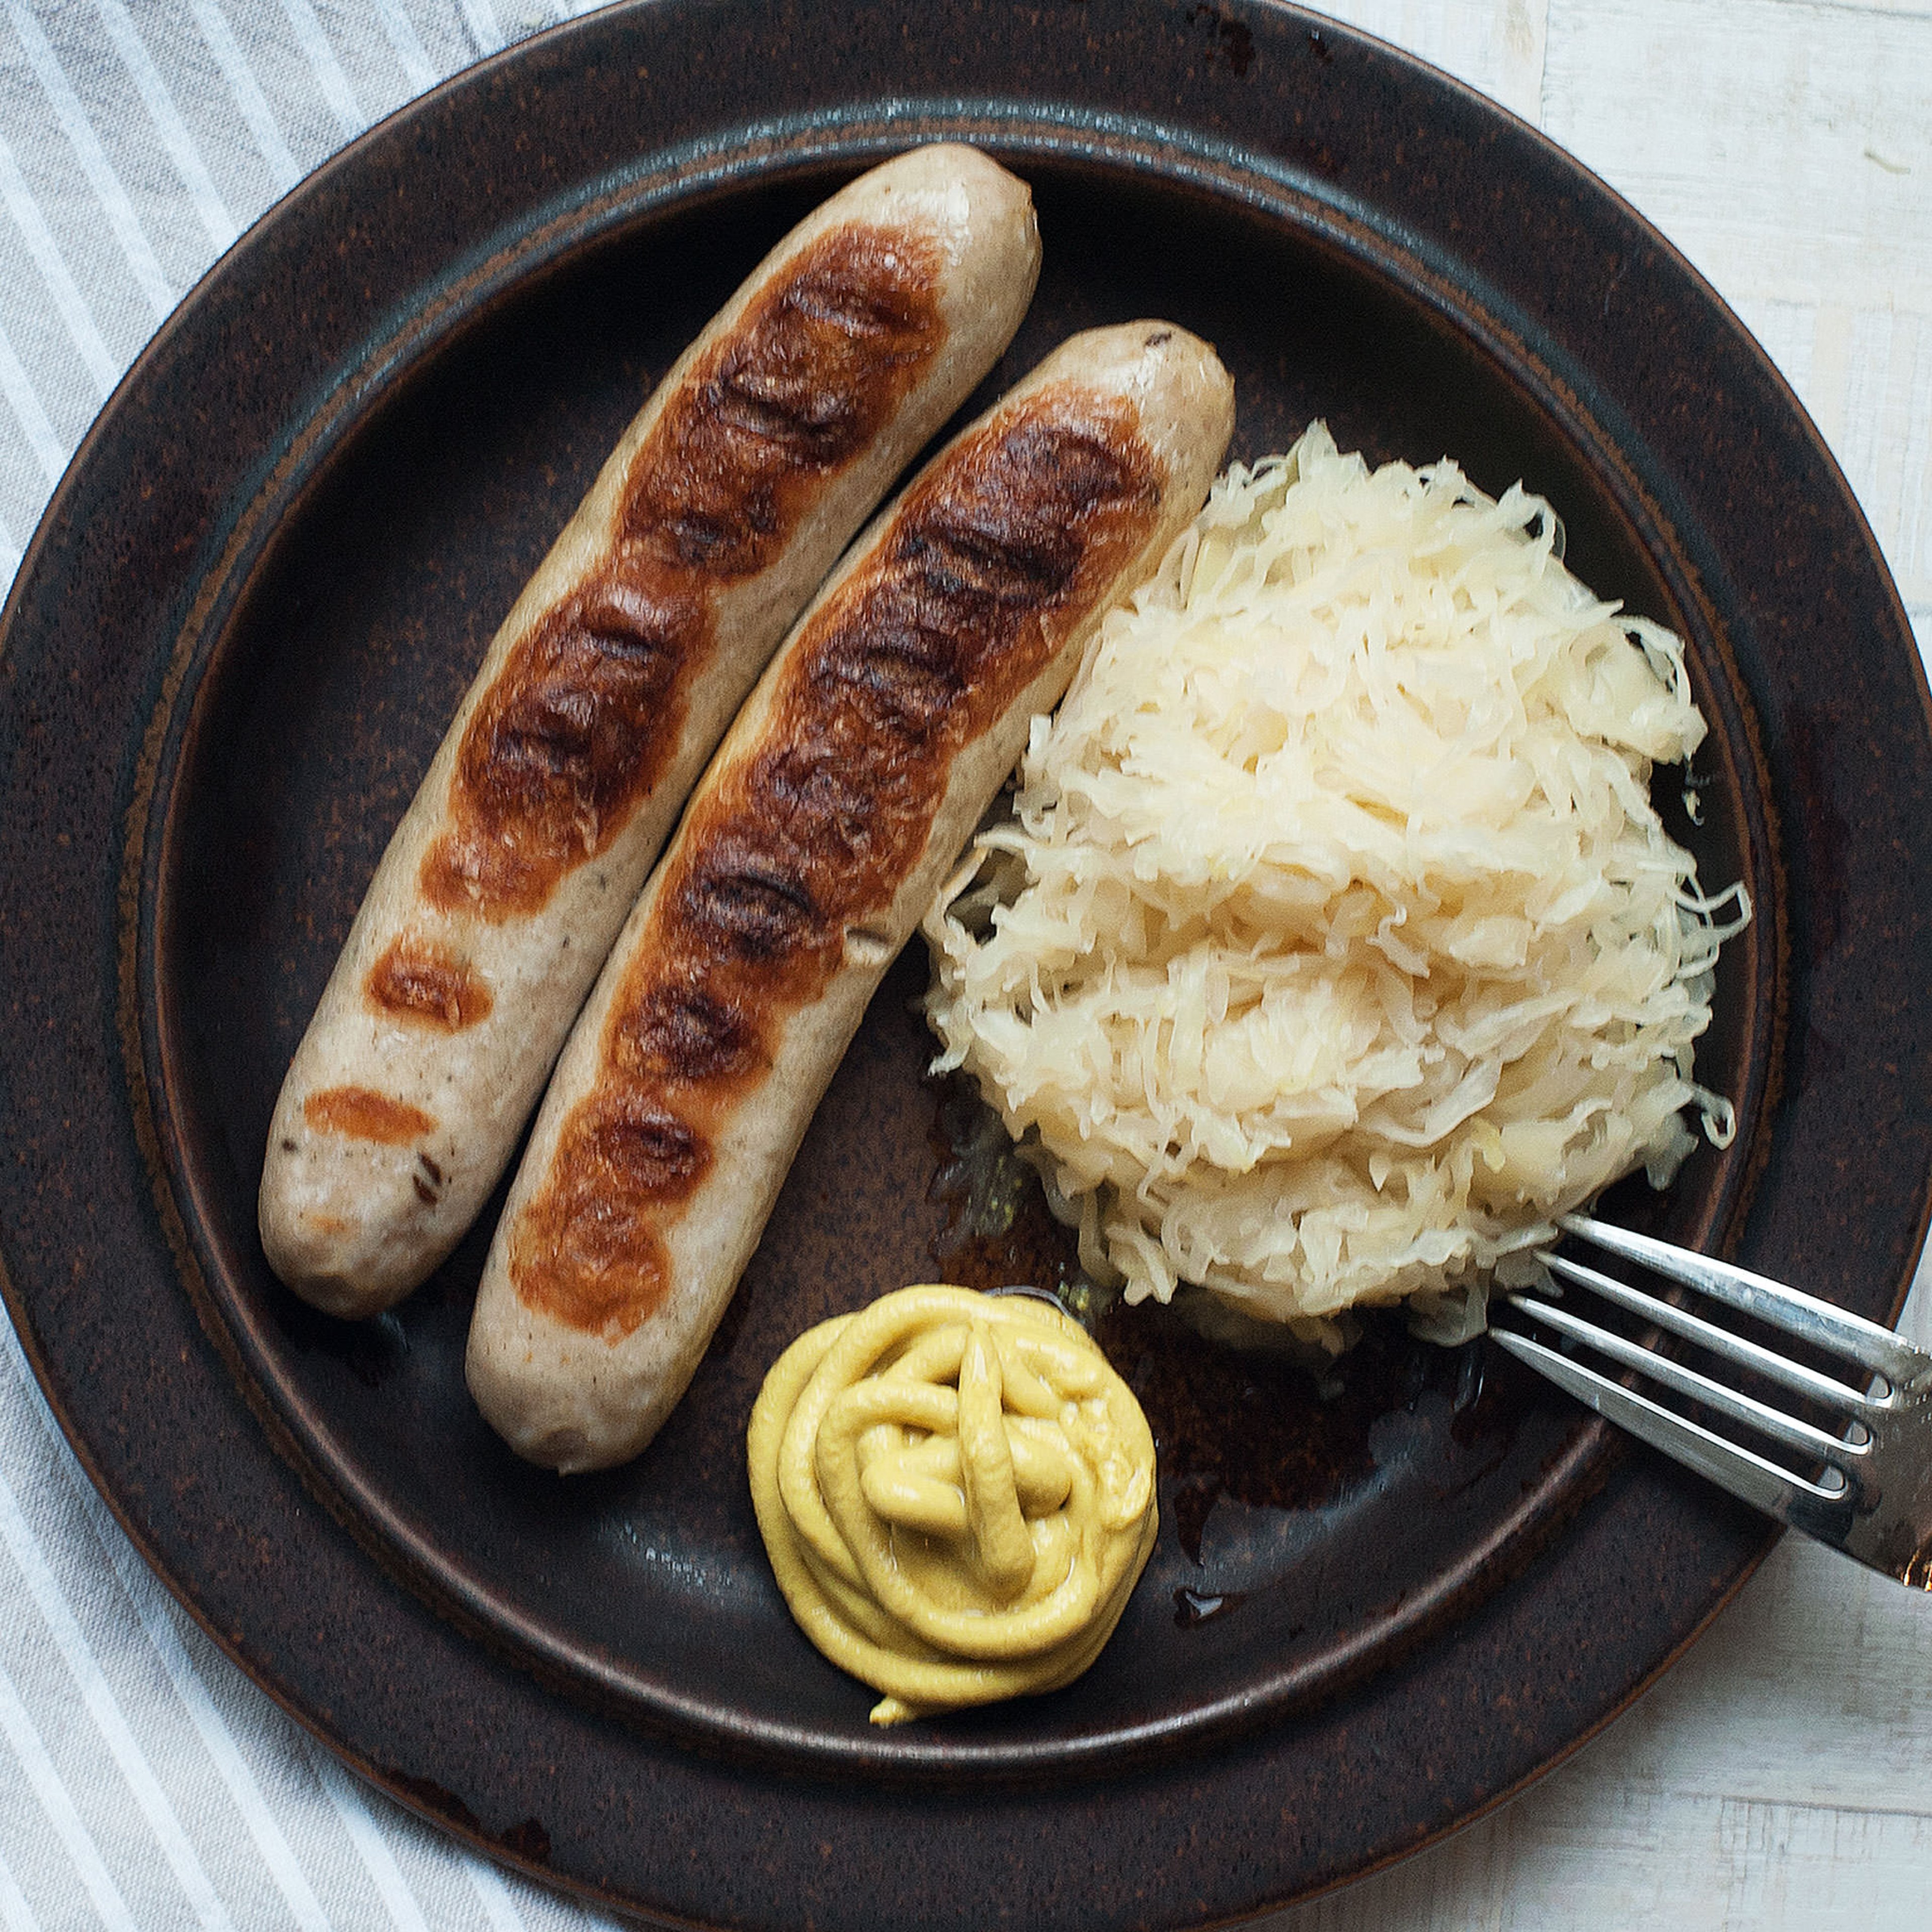 german sausage